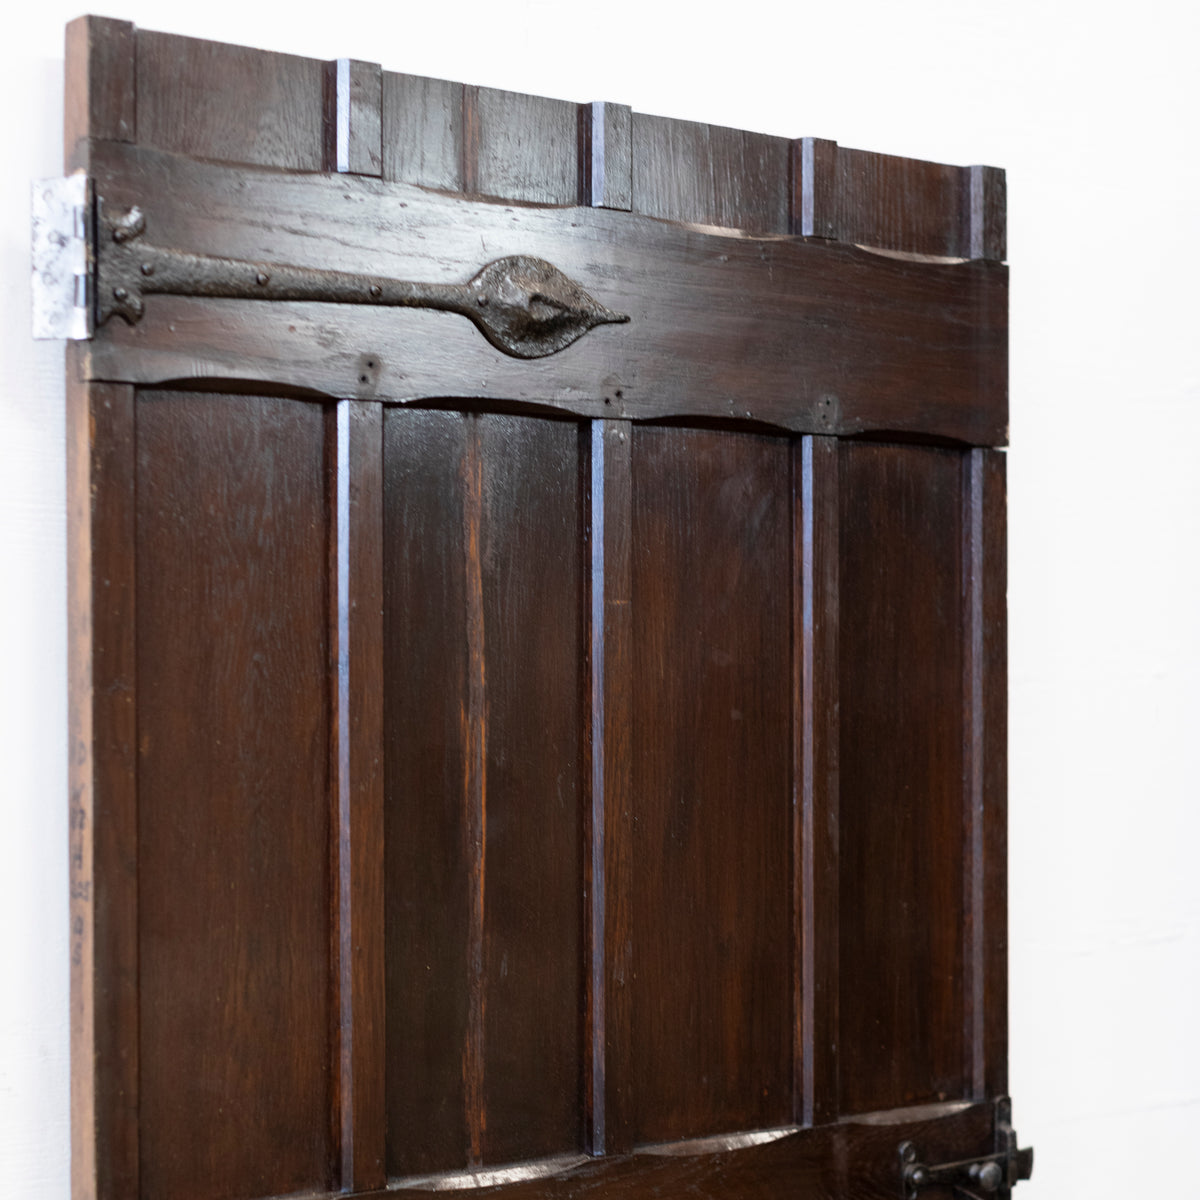 Antique Oak Latch Door - 204cm x 83cm | The Architectural Forum